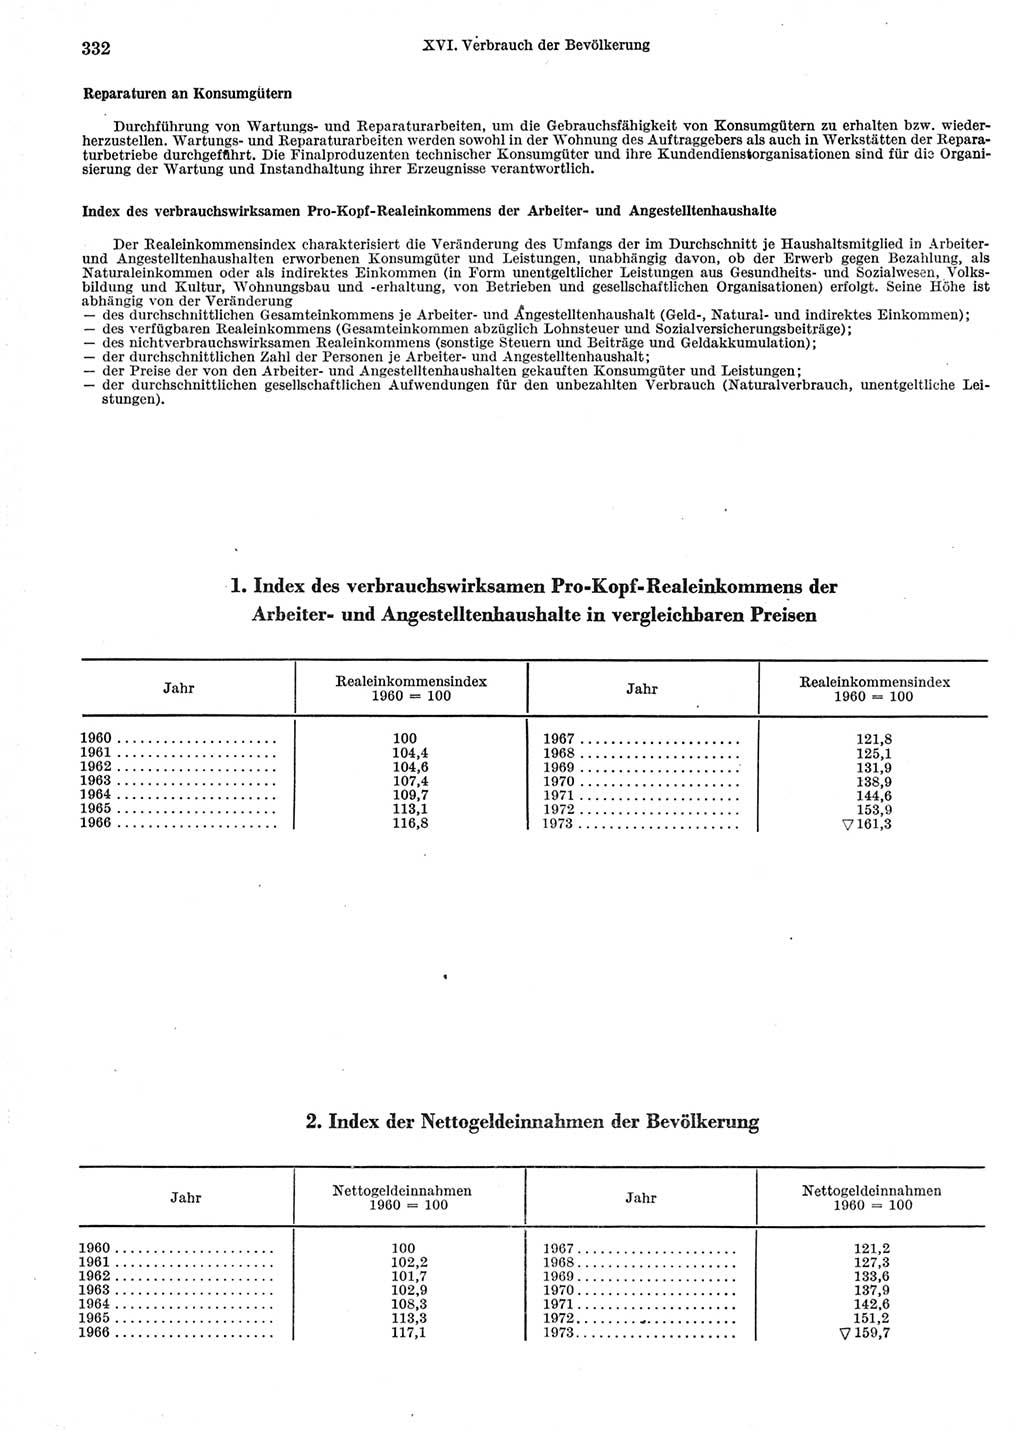 Statistisches Jahrbuch der Deutschen Demokratischen Republik (DDR) 1974, Seite 332 (Stat. Jb. DDR 1974, S. 332)